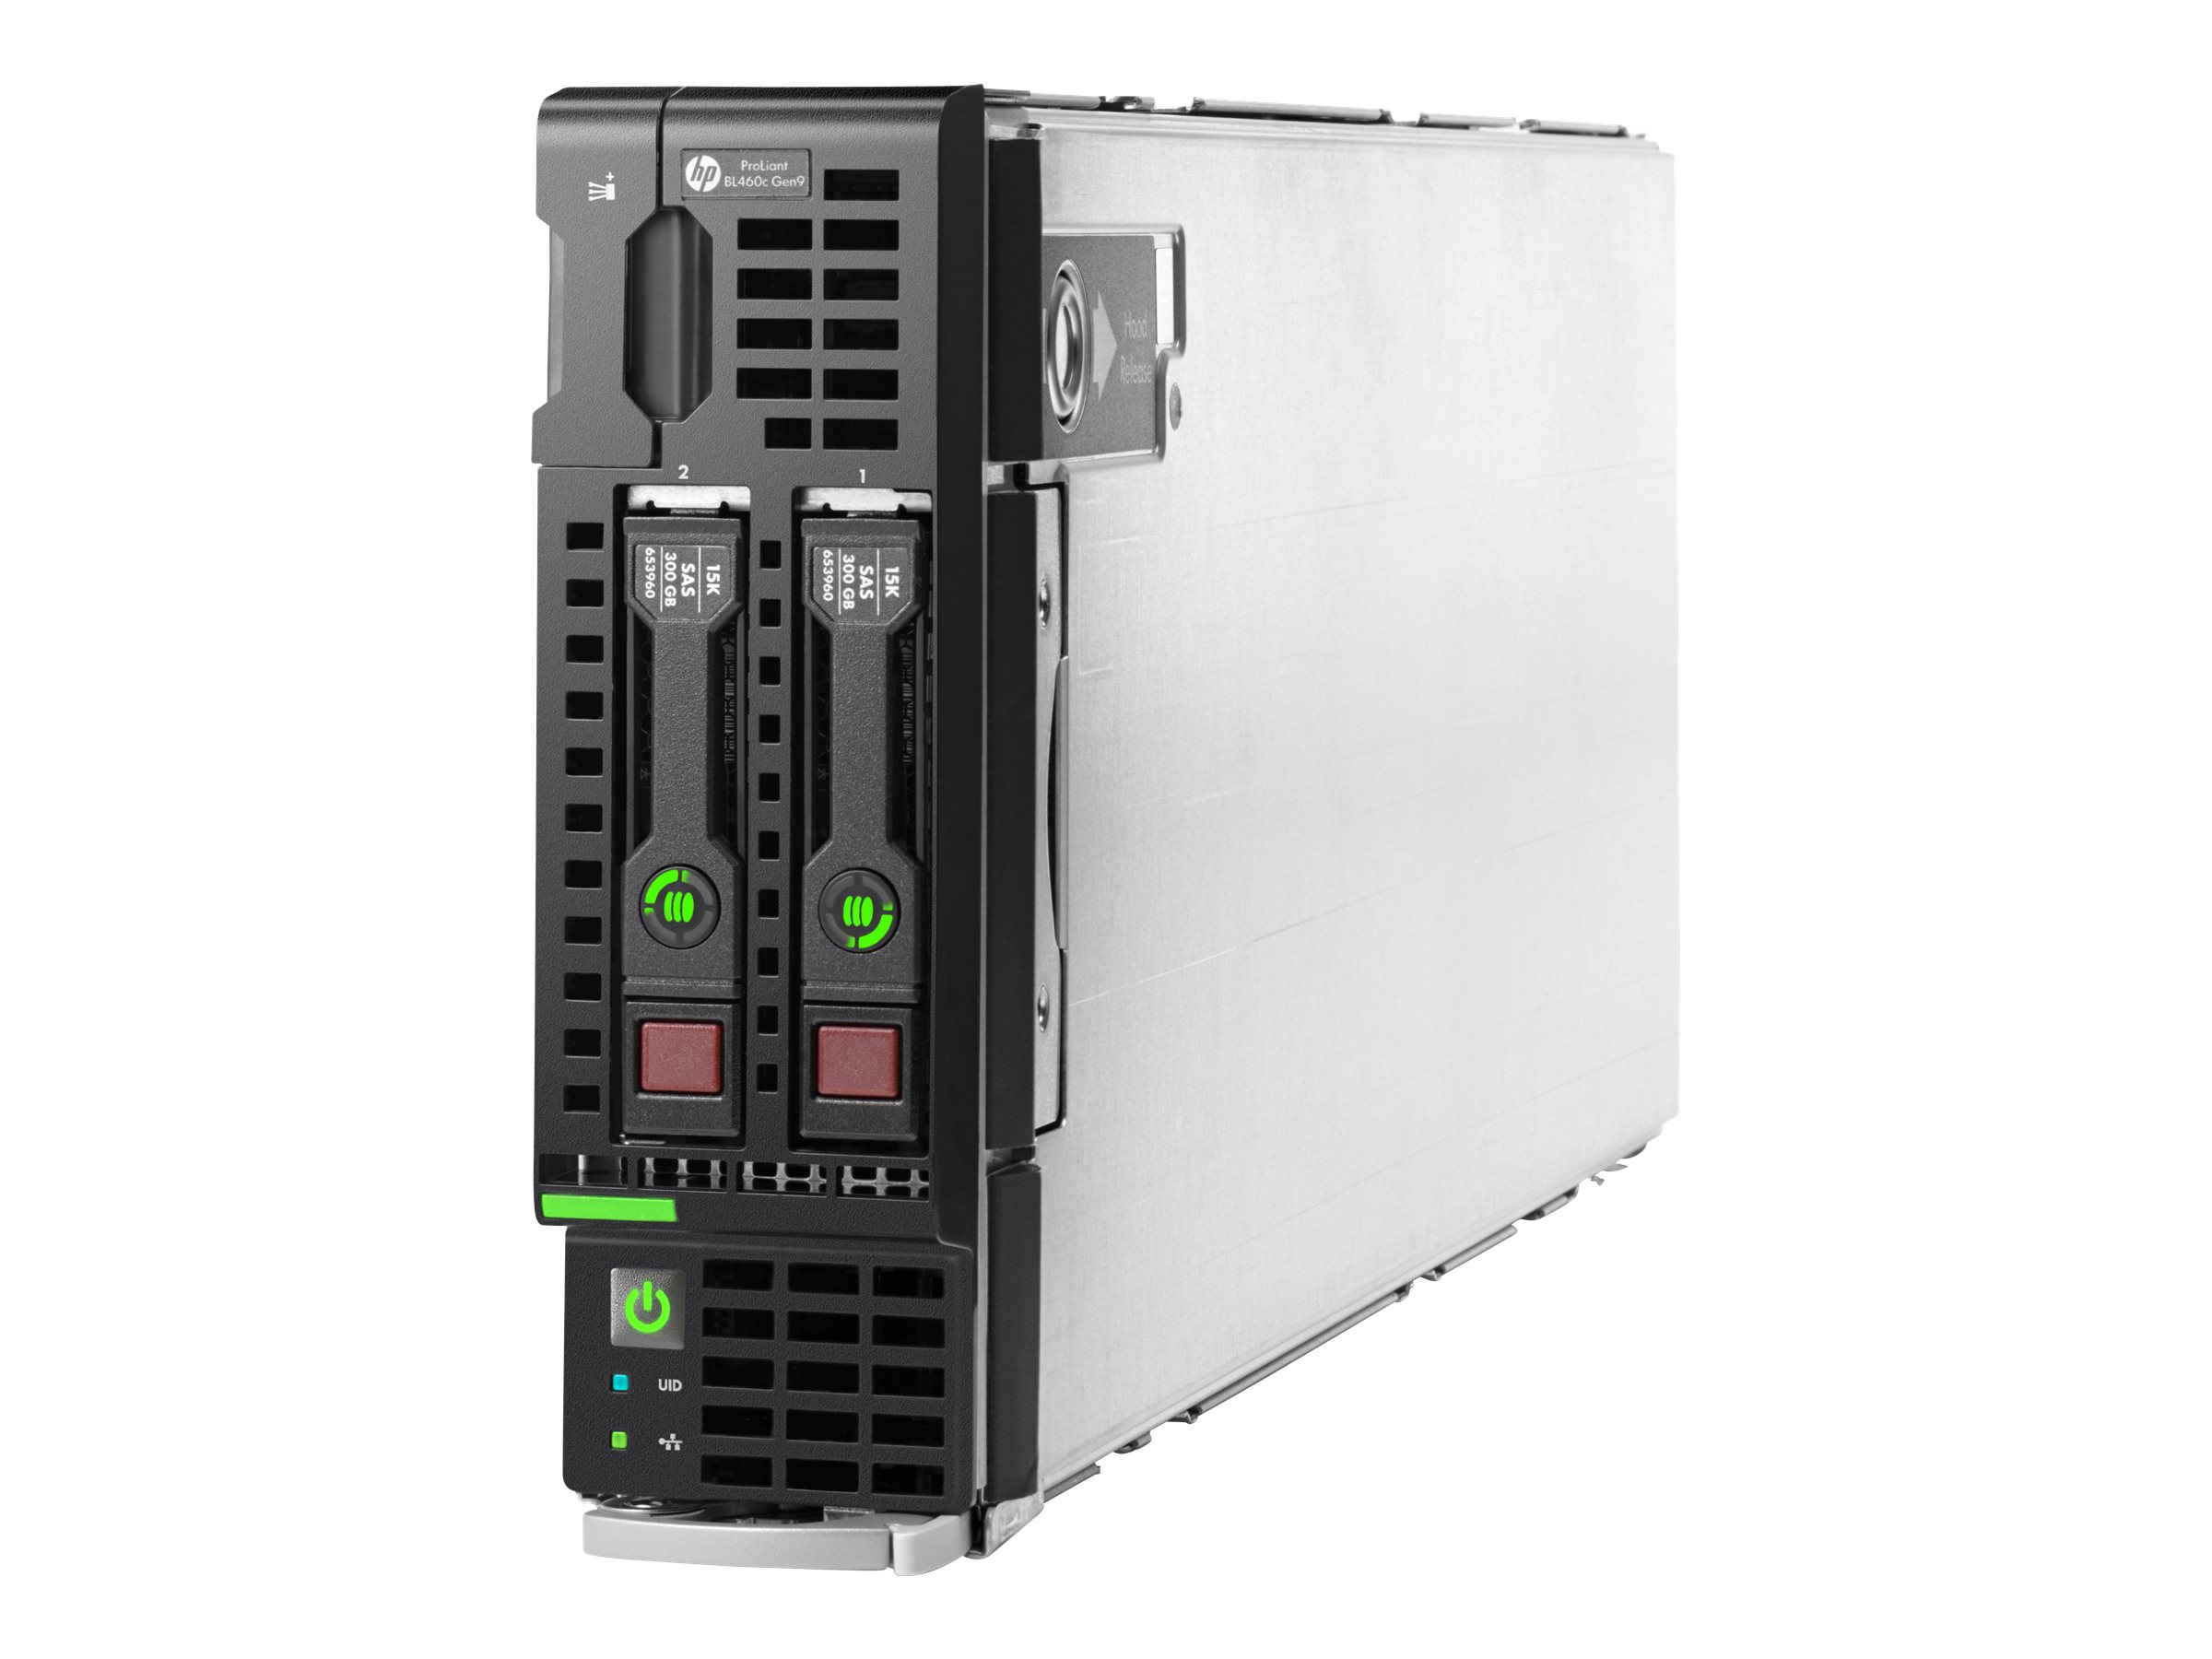 [Wiederaufbereitet] HPE ProLiant BL460c Gen9 - Server - Blade - zweiweg - keine CPU - RAM 0 GB